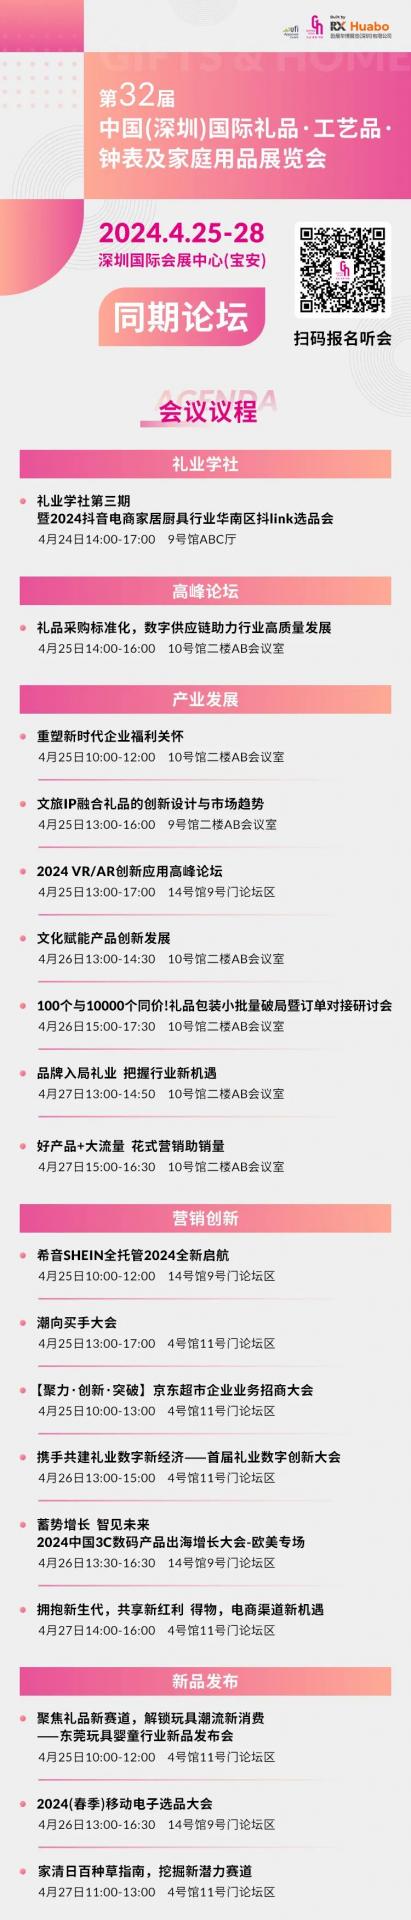 深圳26万㎡重量级大展定档！双地铁直达，限免门票！